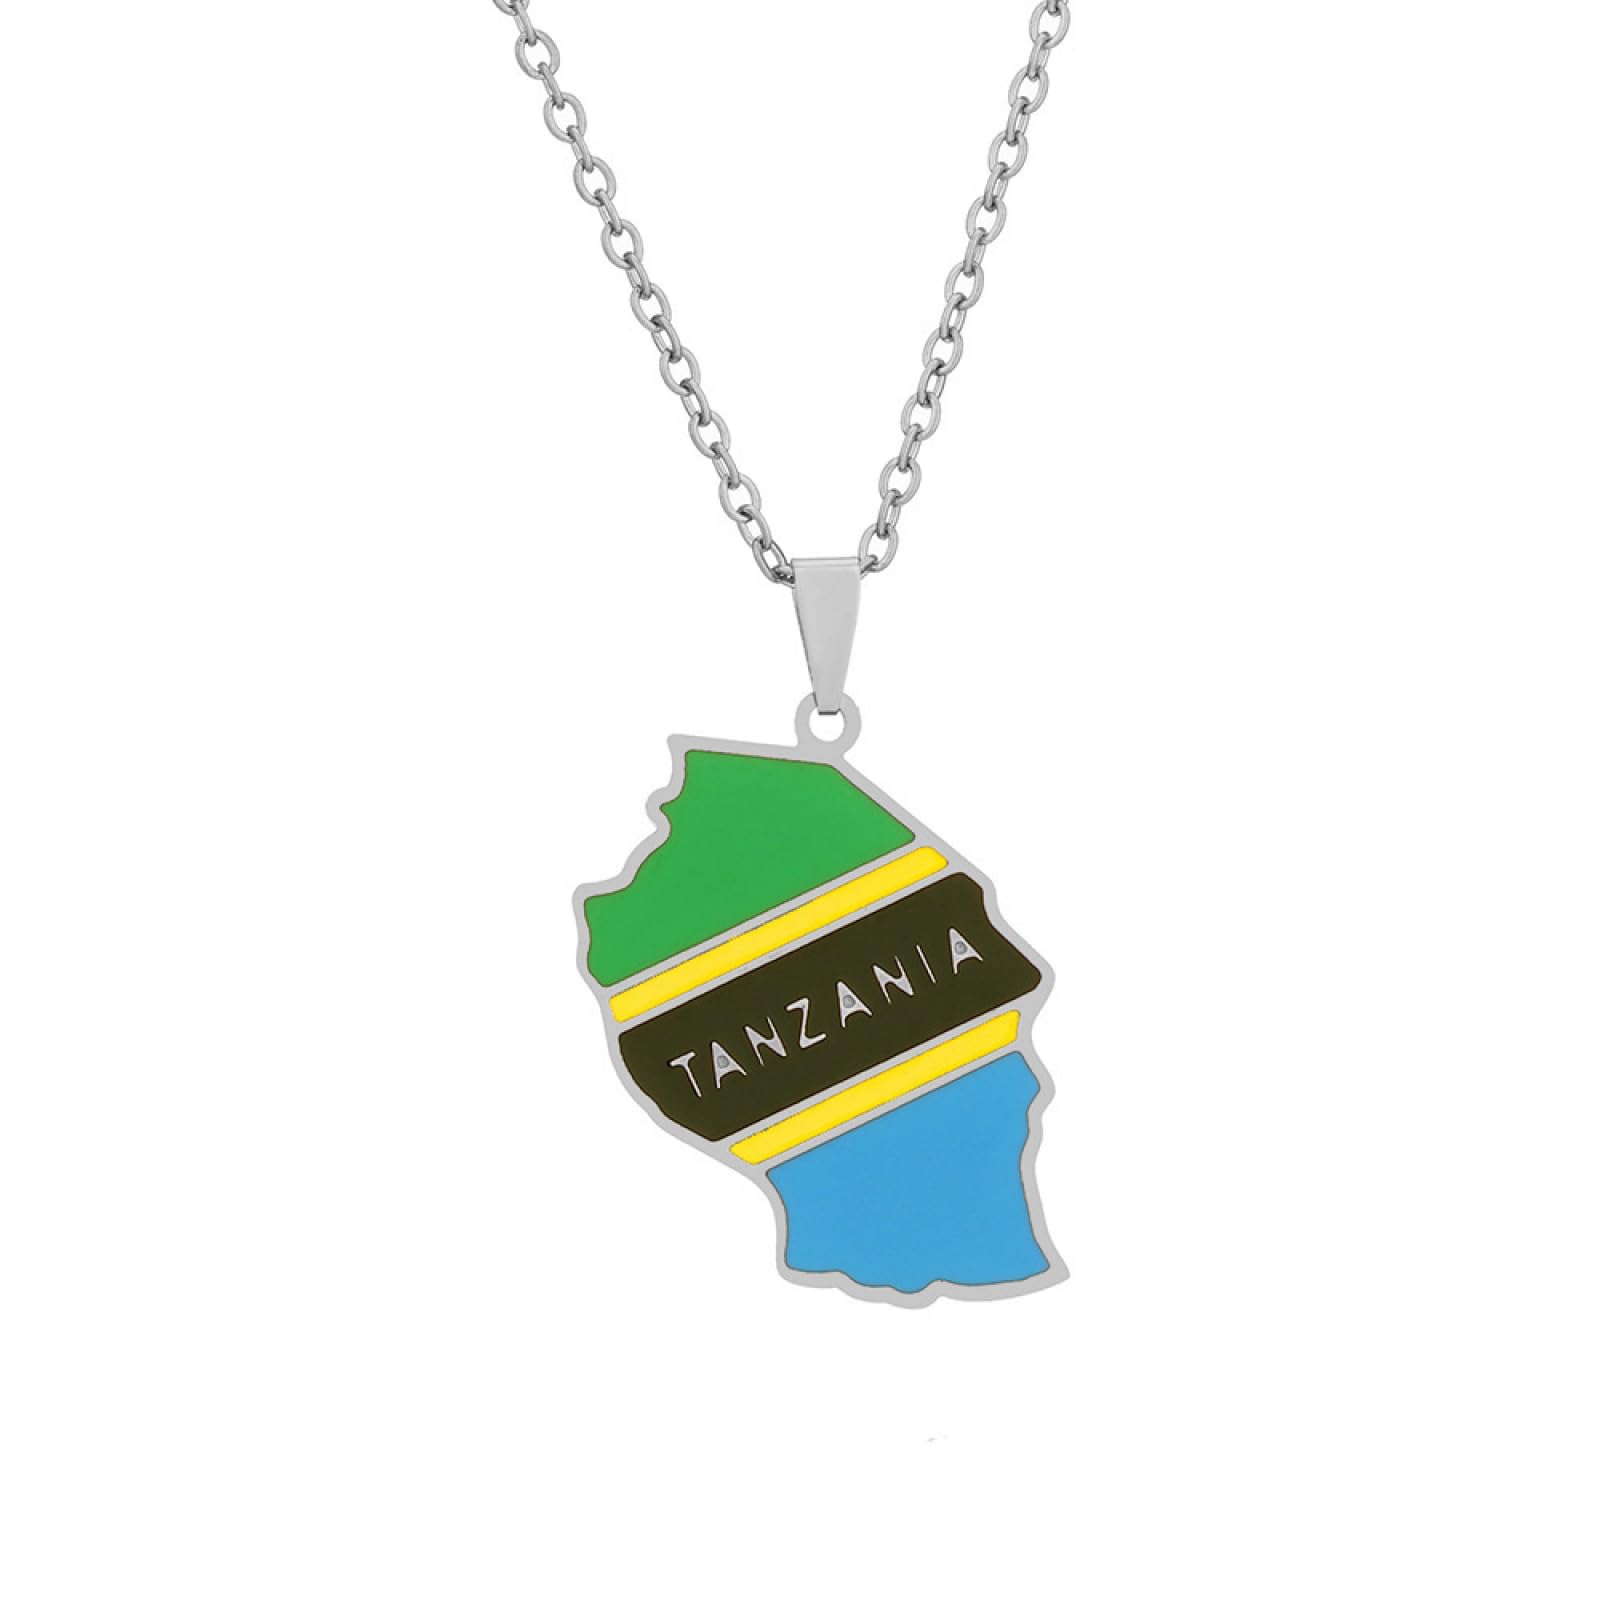 JLVVJL Halskette Europäische und amerikanische Tansania-Karte und Flaggen-Halsketten für Männer und Frauen, Accessoires im Ethno-Stil für Paare Geburtstag Party Geschenk